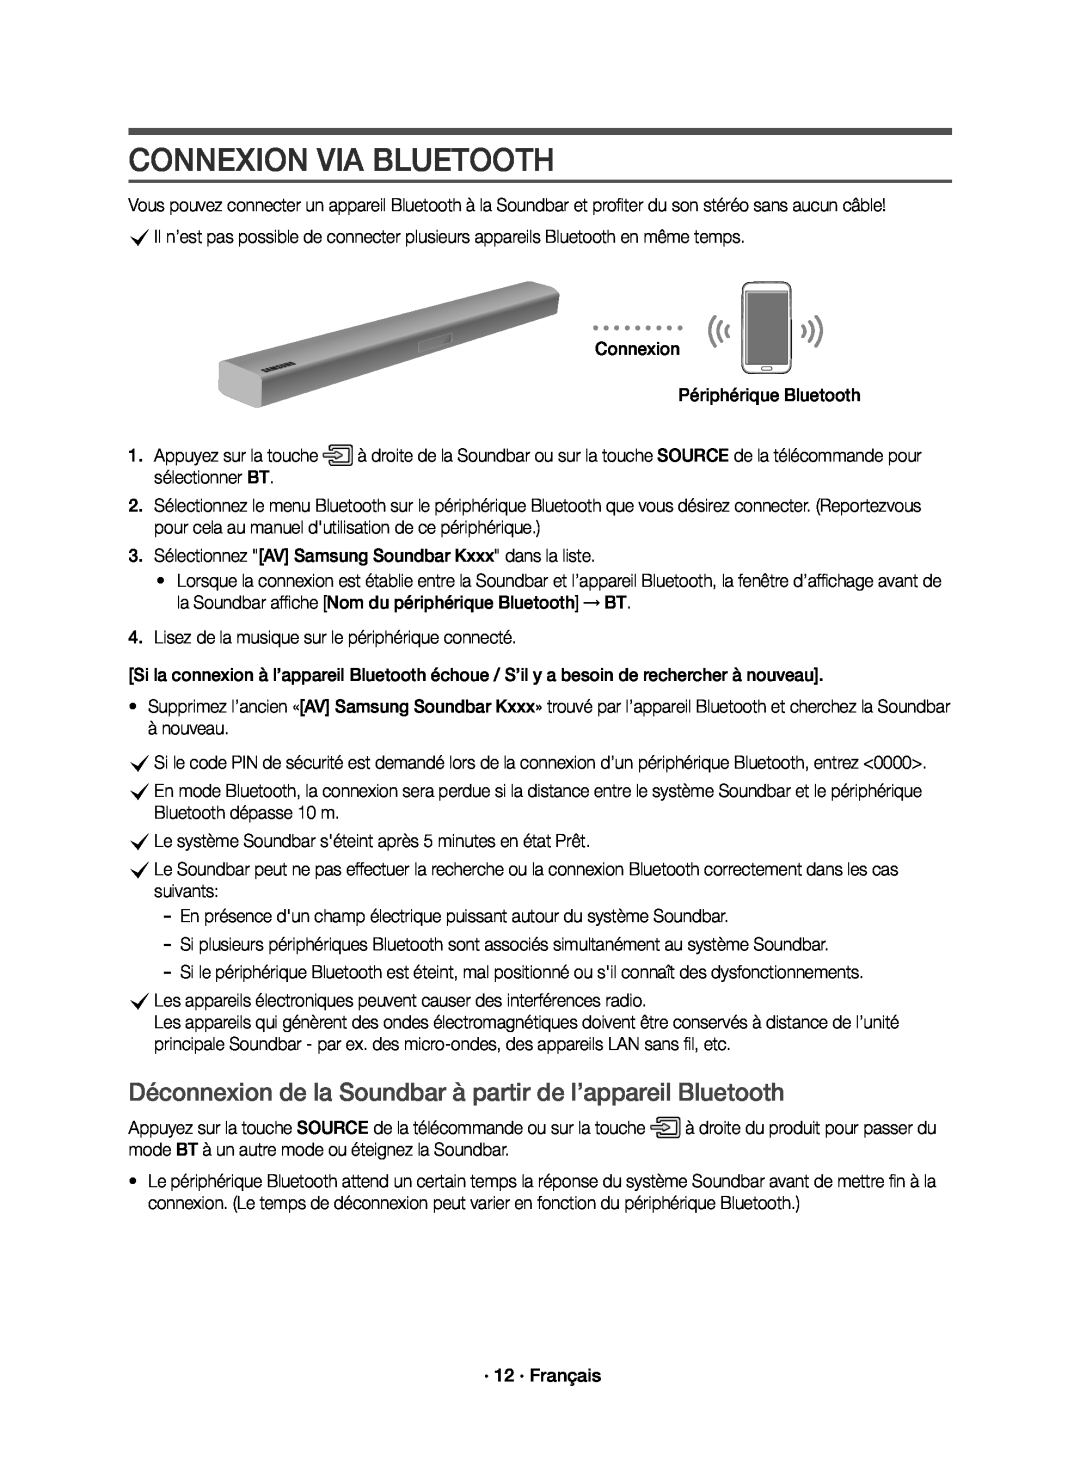 Samsung HW-K651/ZF, HW-K650/ZF manual Connexion Via Bluetooth, Déconnexion de la Soundbar à partir de l’appareil Bluetooth 